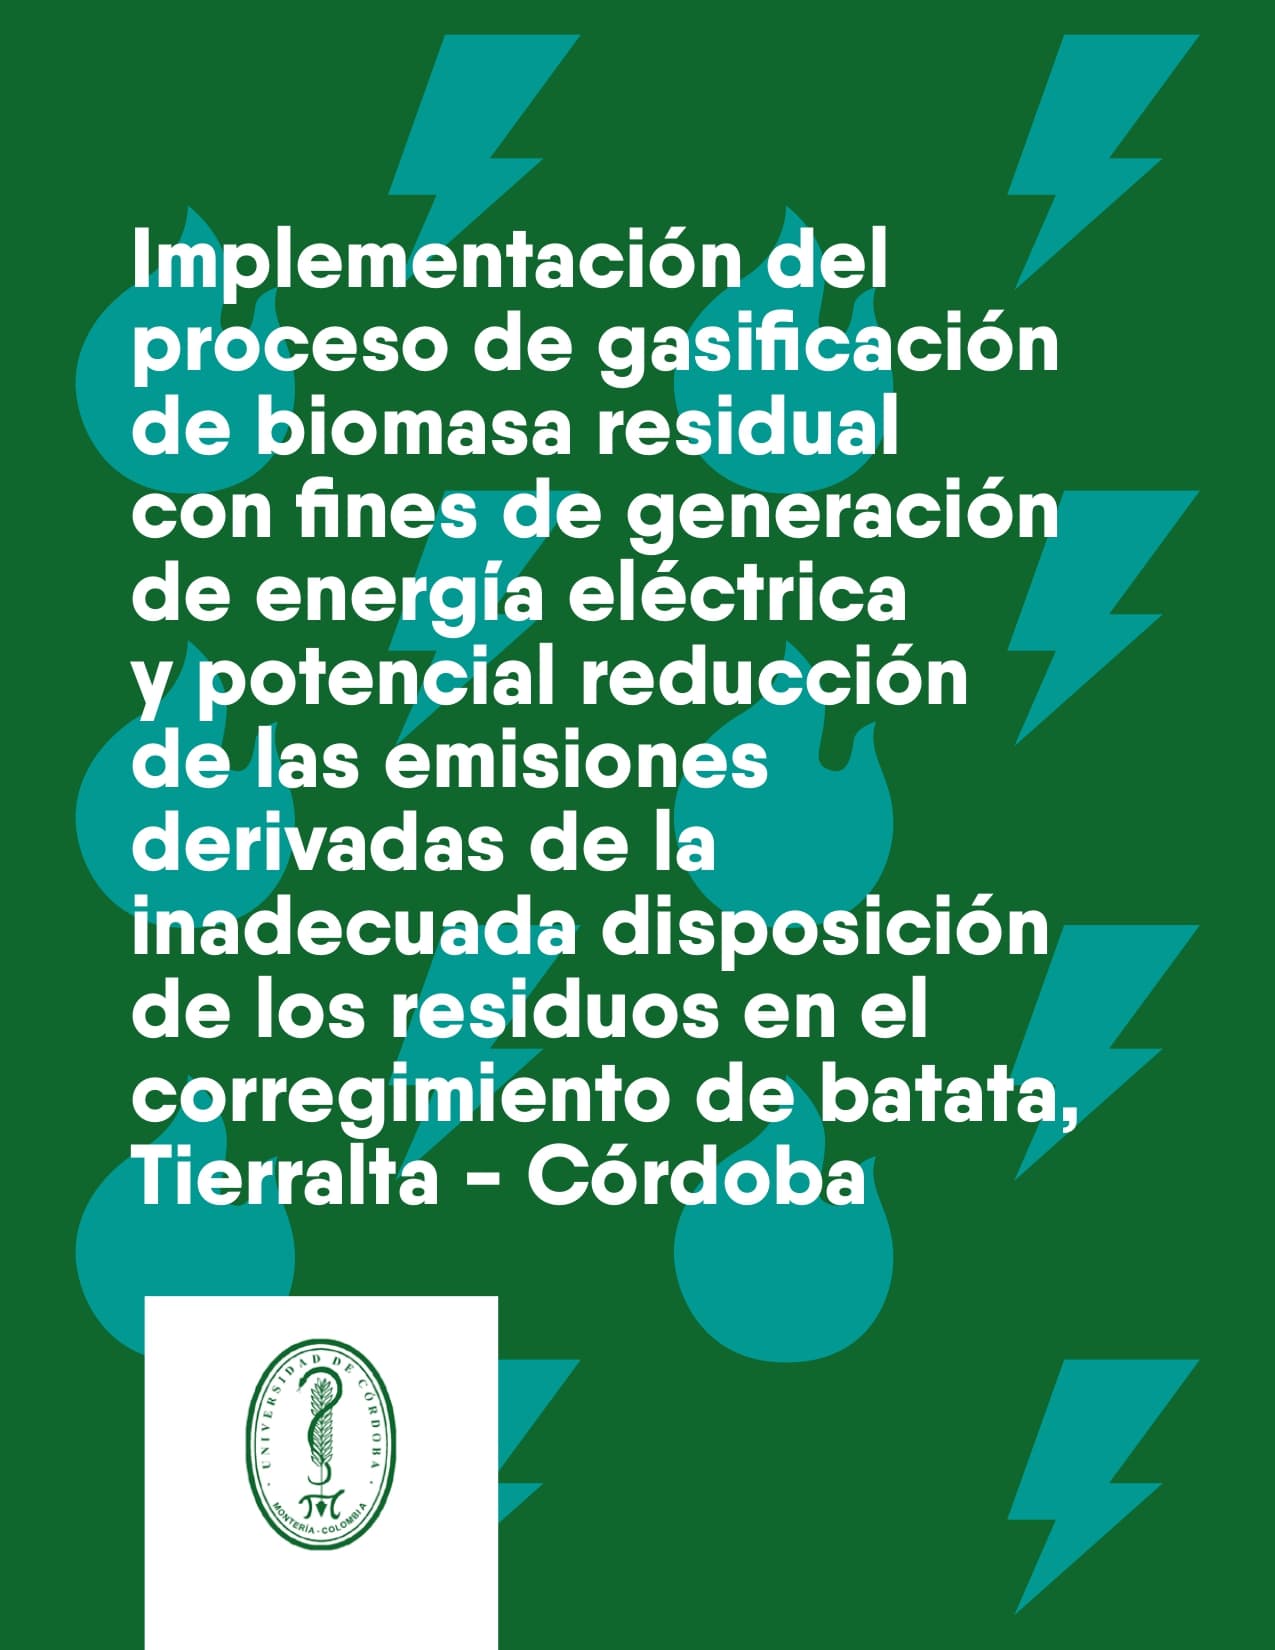 Implementación del proceso de gasificación de biomasa residual con fines de generación de energía eléctrica y potencial reducción de las emisiones derivadas de la inadecuada disposición de los residuos en el corregimiento de batata